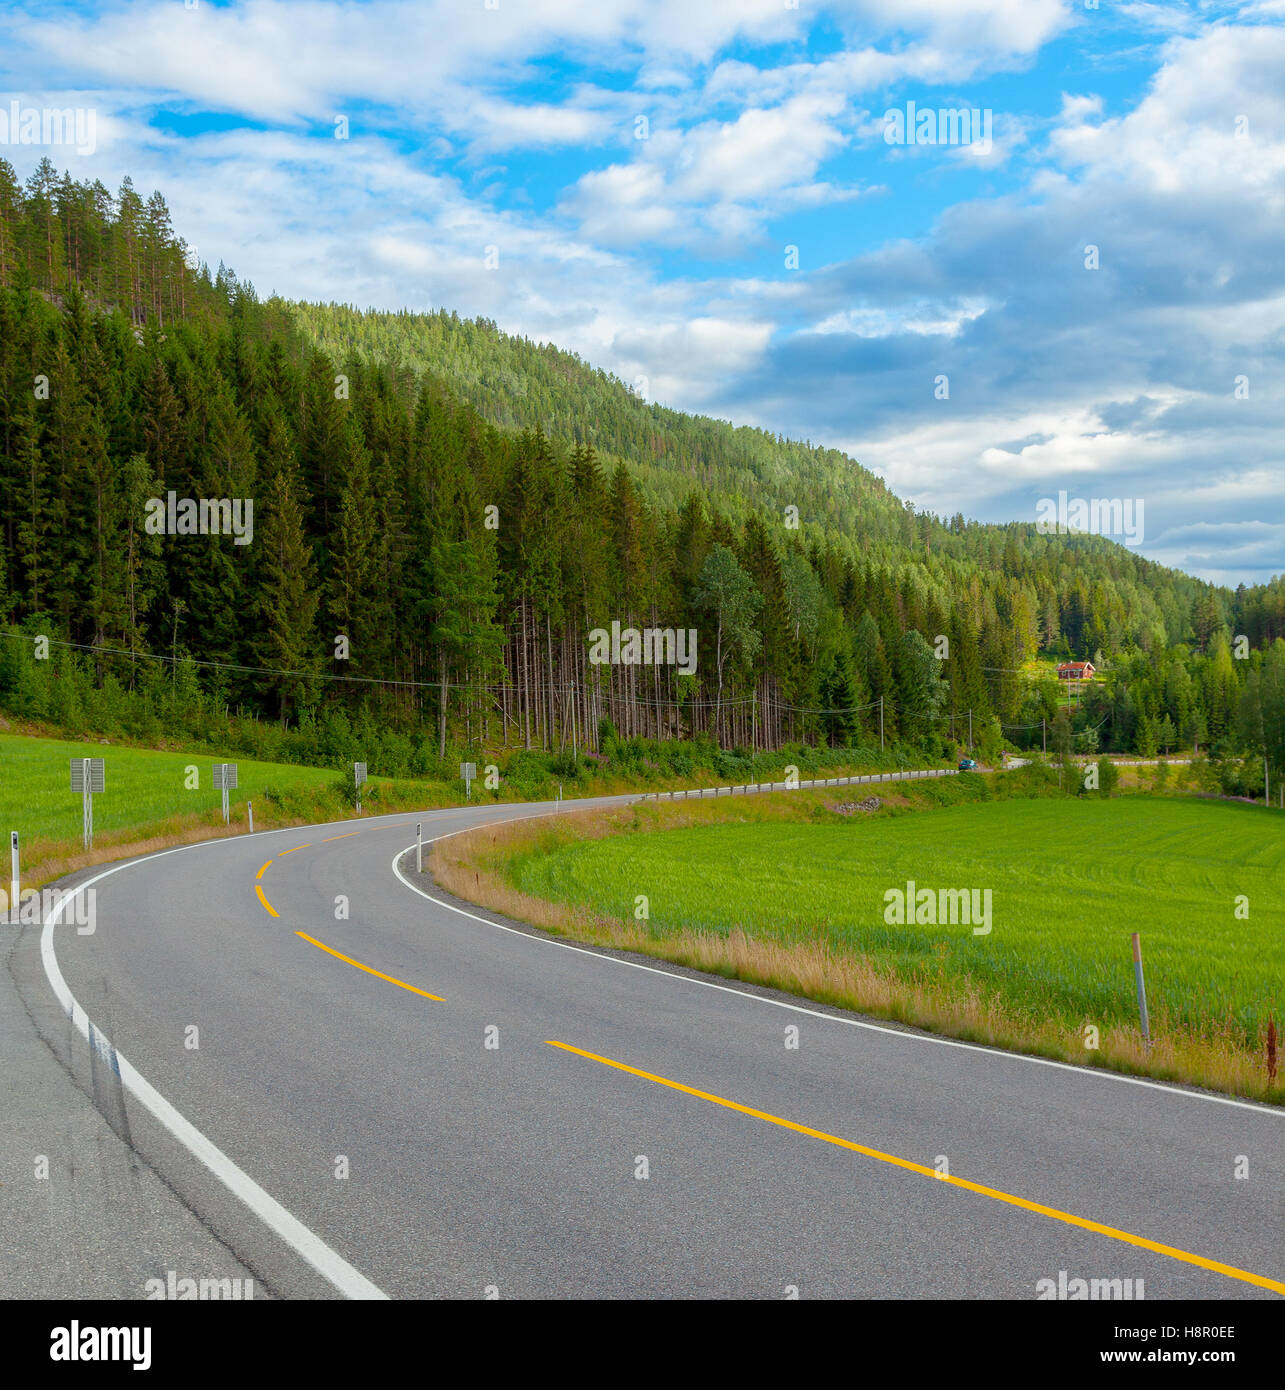 Route de la courbe, route de voyage, route d'exploration en Norvège, Europe. Banque D'Images